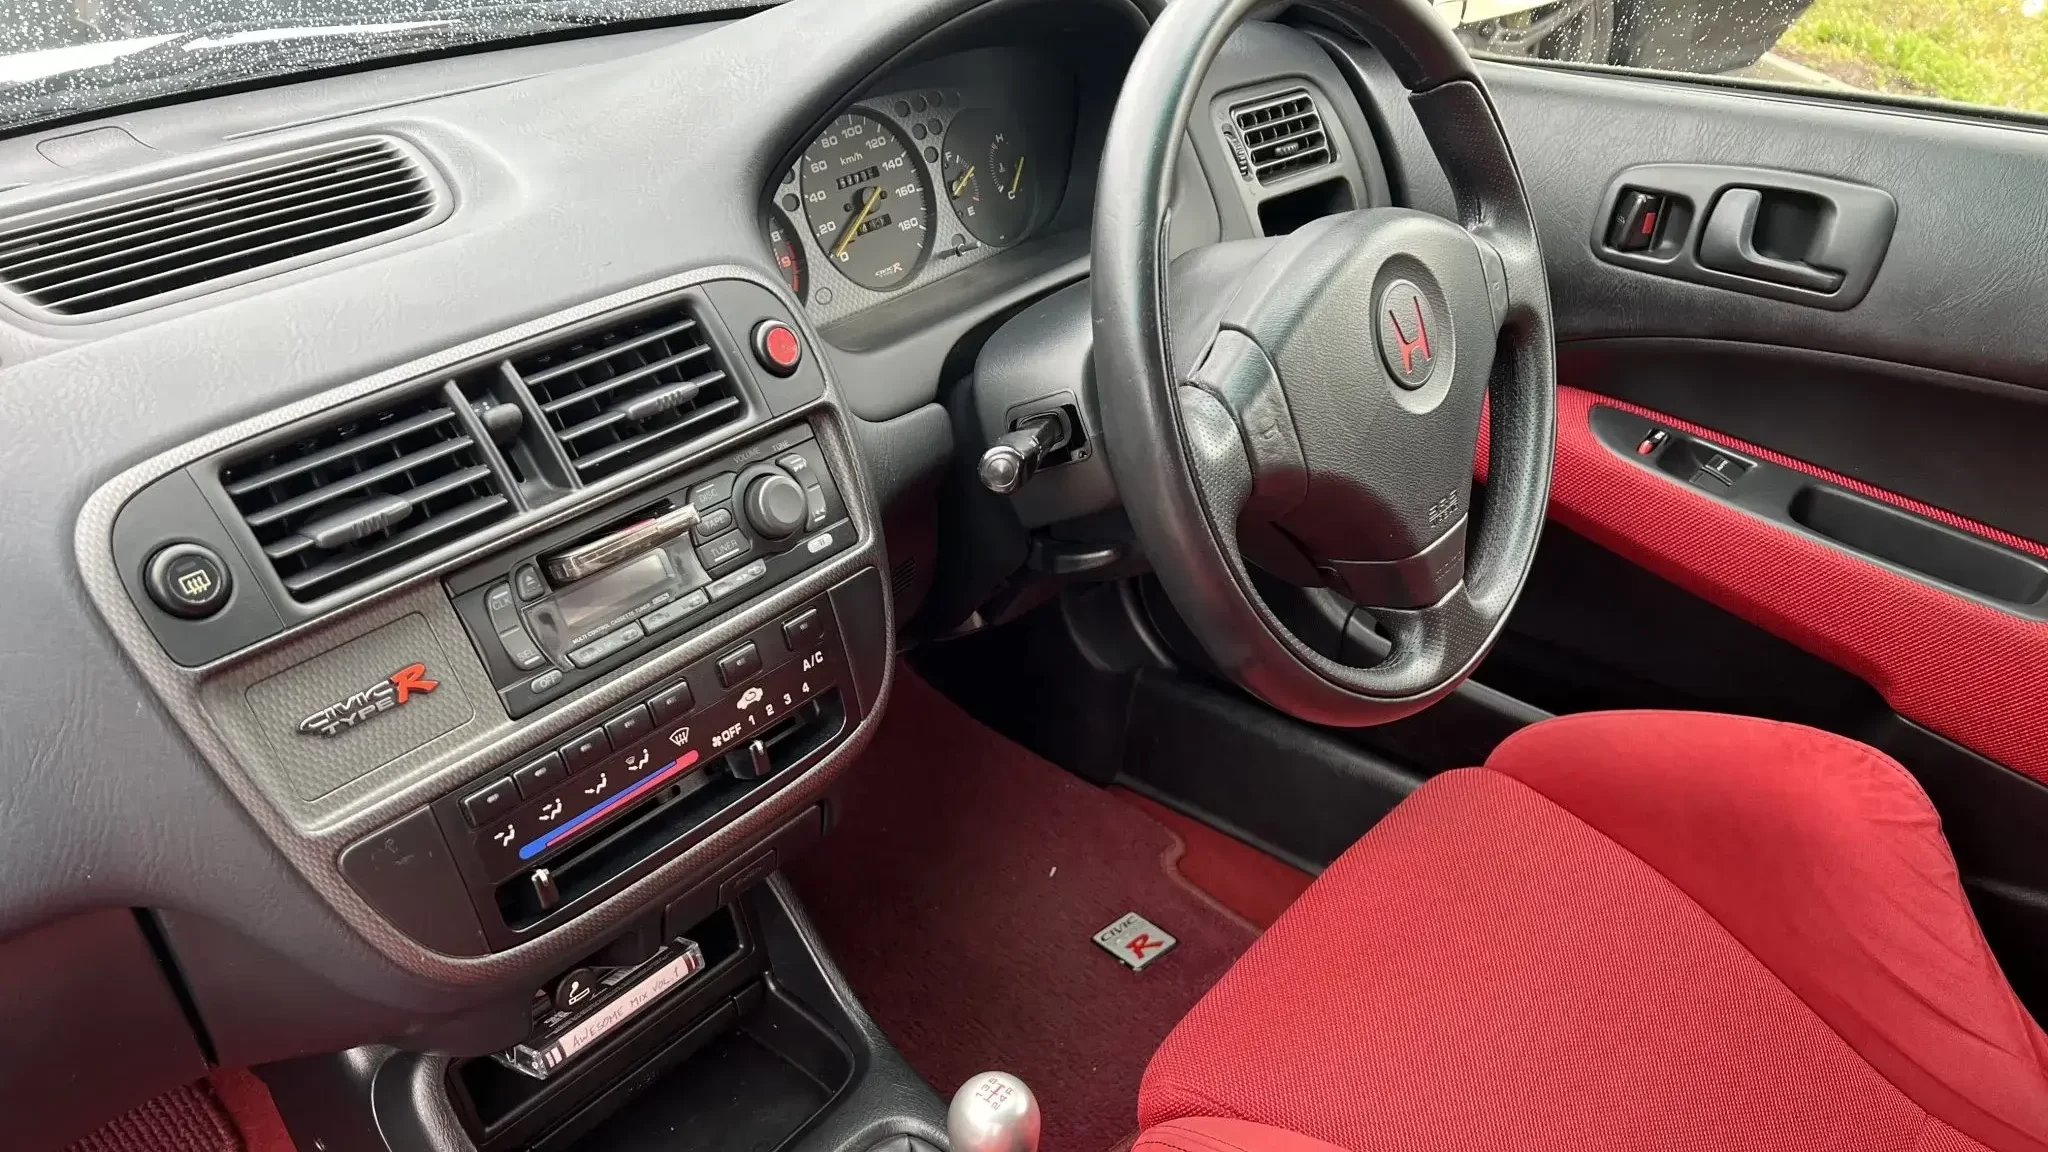 Honda Civic Type R EK9 - interior